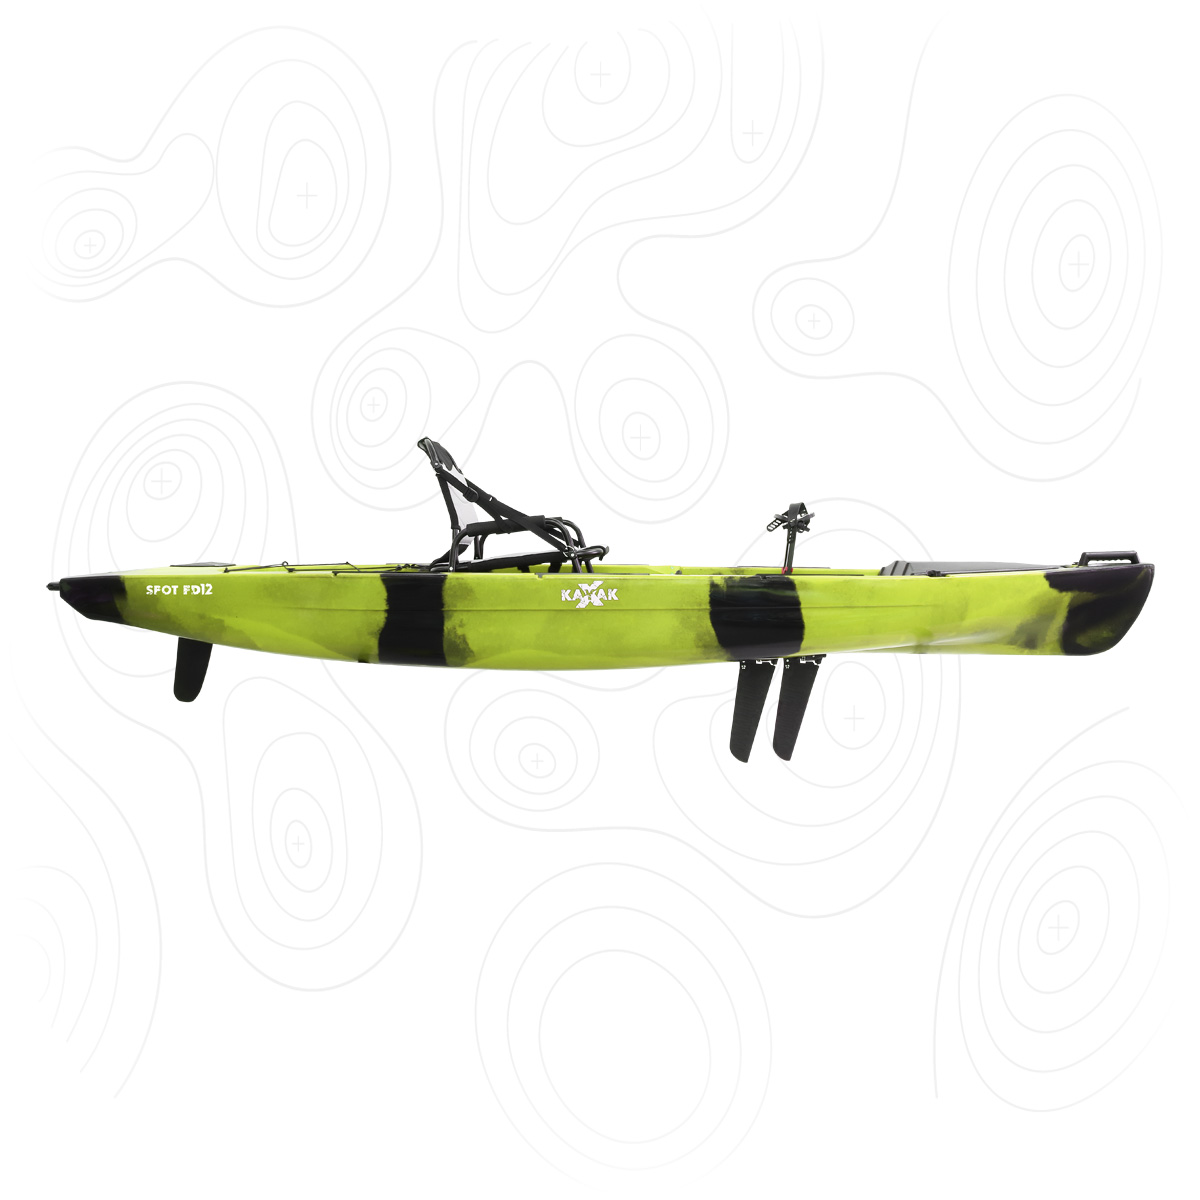 SPOT FD12<br><span style="color: #a6df4b;font-size:80%;">SABER MAIS</span><br><span style="color: #9d9997;font-size:70%;">Velocidade e conforto! Um kayak muito bem equipado, com uma excelente cadeira e com sistema de pedais de pás</span>